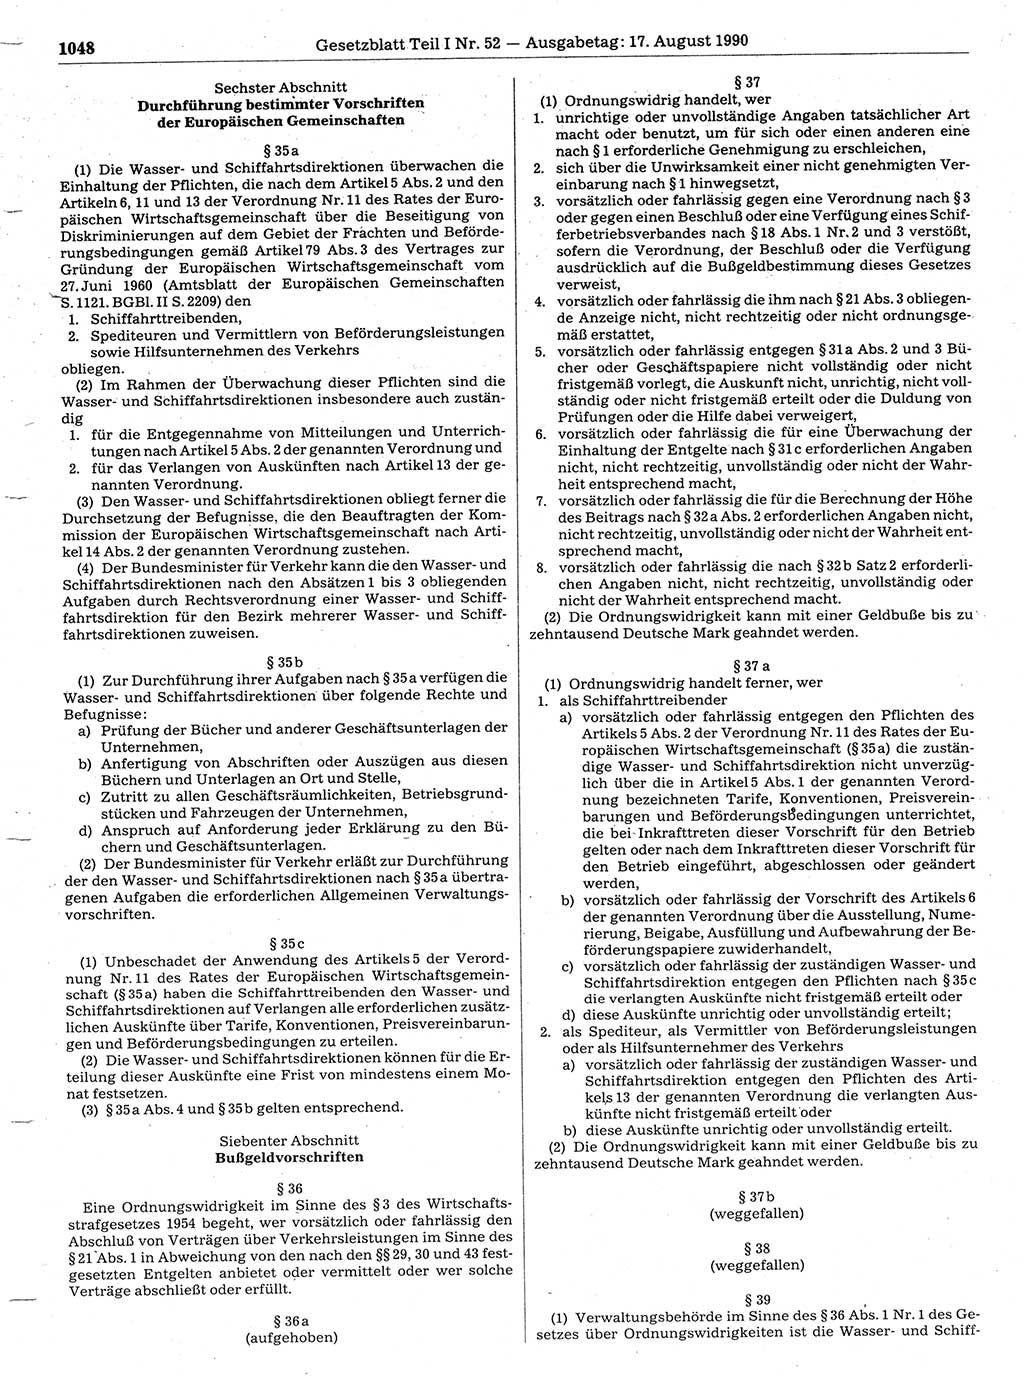 Gesetzblatt (GBl.) der Deutschen Demokratischen Republik (DDR) Teil Ⅰ 1990, Seite 1048 (GBl. DDR Ⅰ 1990, S. 1048)